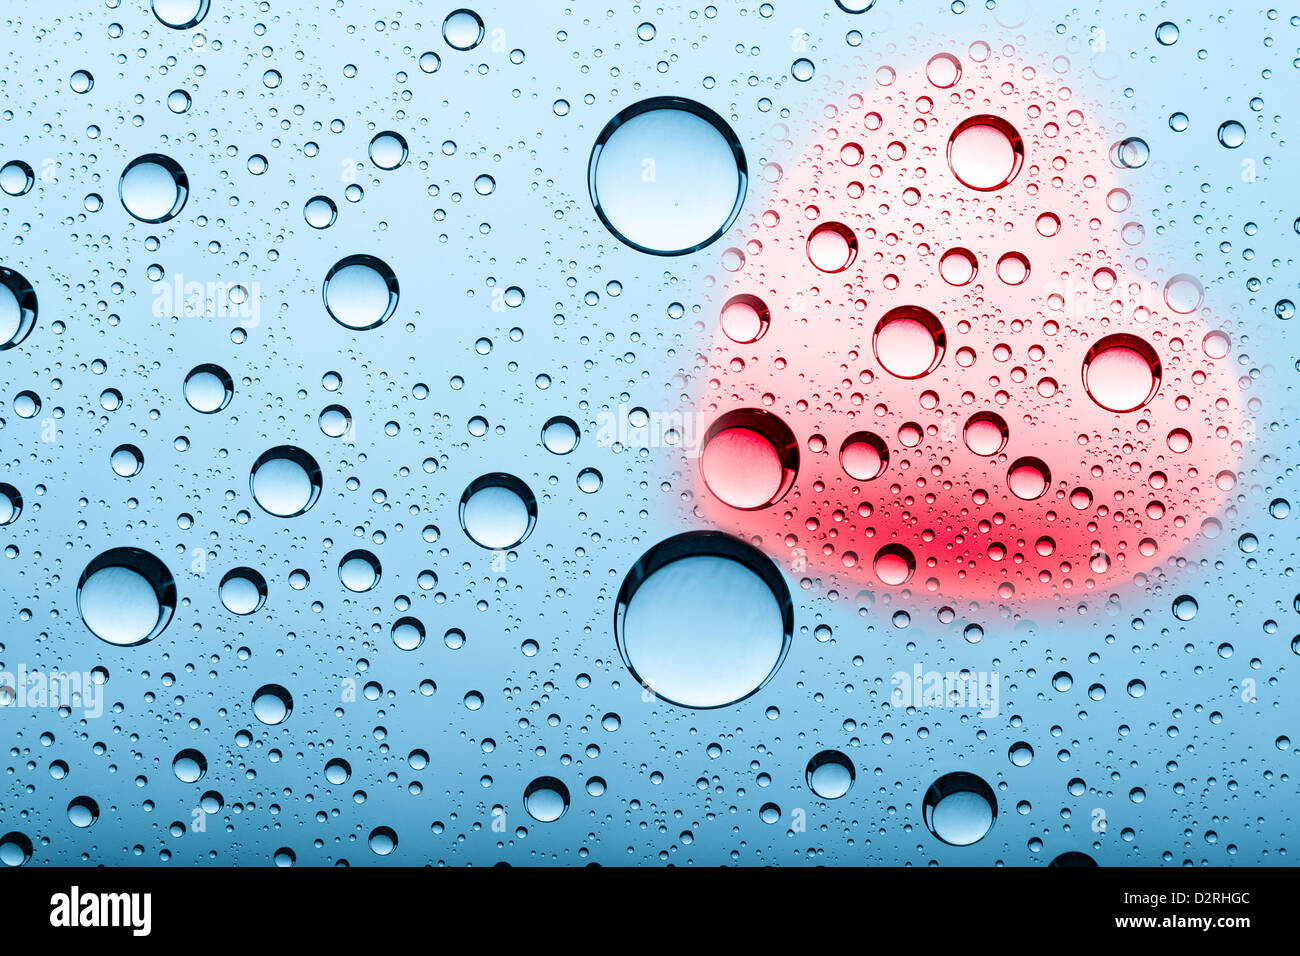 Fondos abstractos con burbujas de agua y con forma de corazón Foto de stock